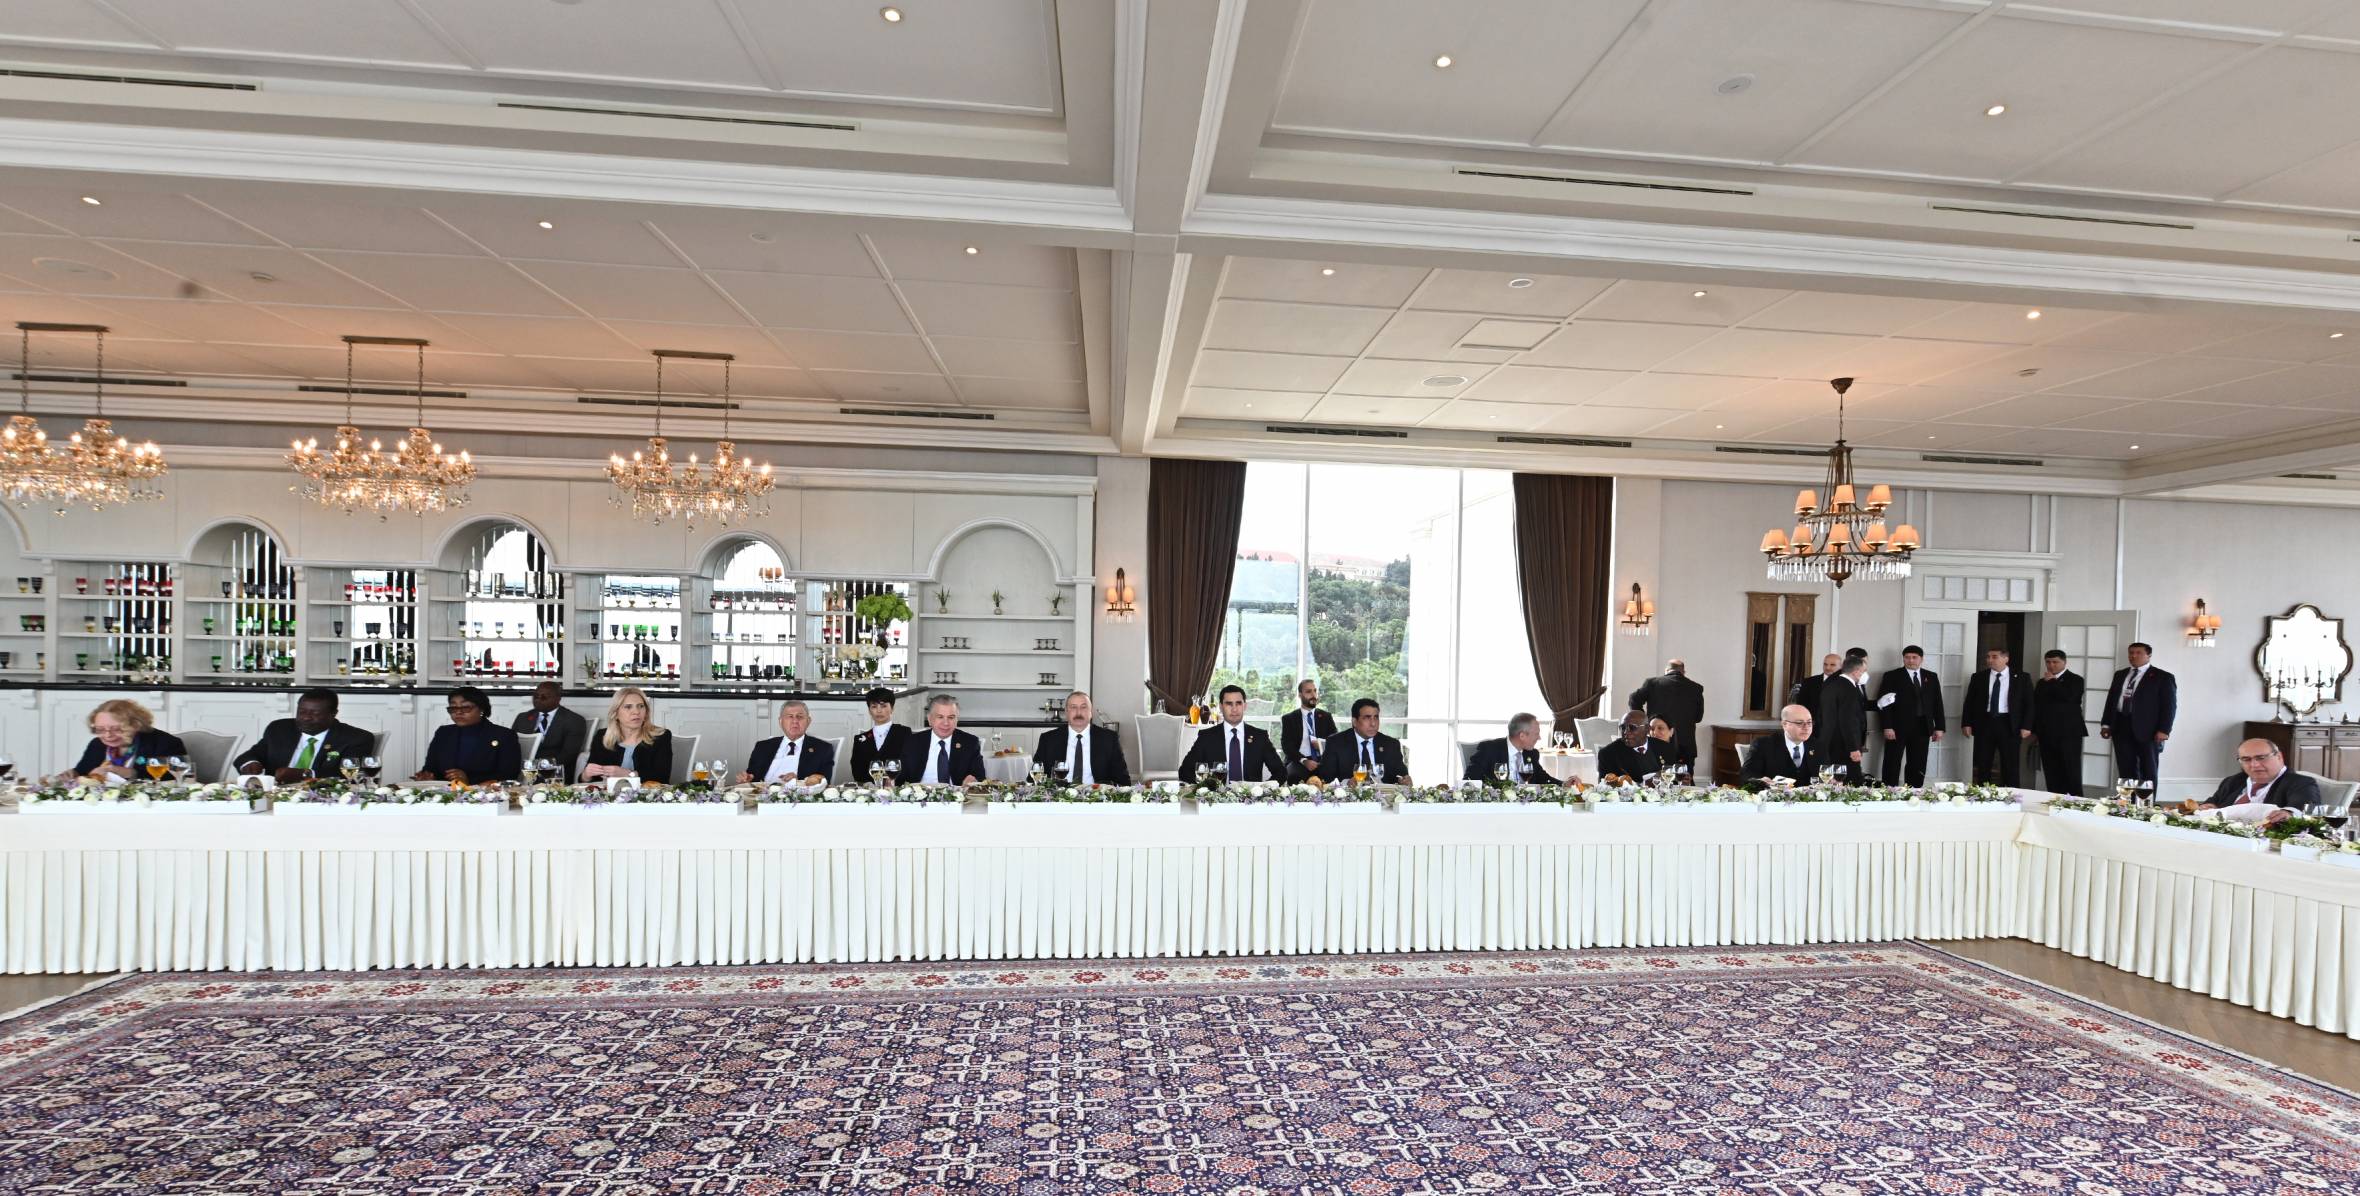 От имени Президента Ильхама Алиева дан прием в честь участников проведенного в Баку Саммита Движения неприсоединения